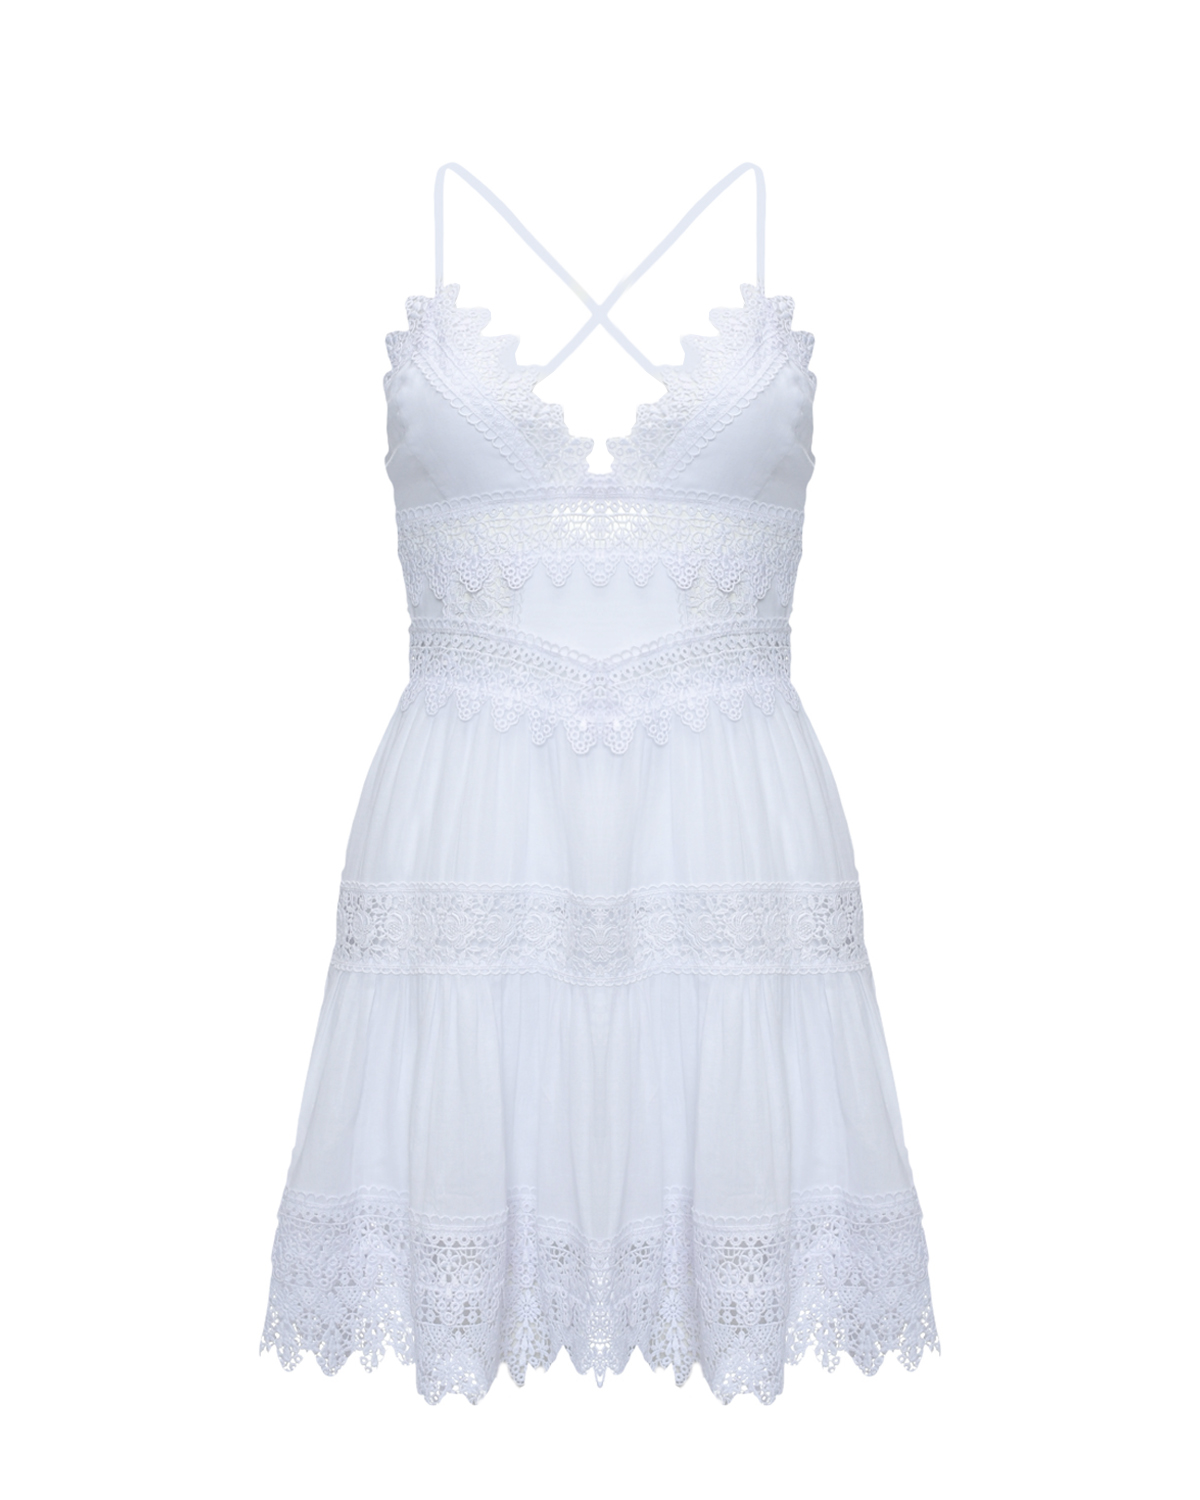 Мини-платье с кружевными вставками, белое Charo Ruiz, размер 42, цвет белый - фото 1